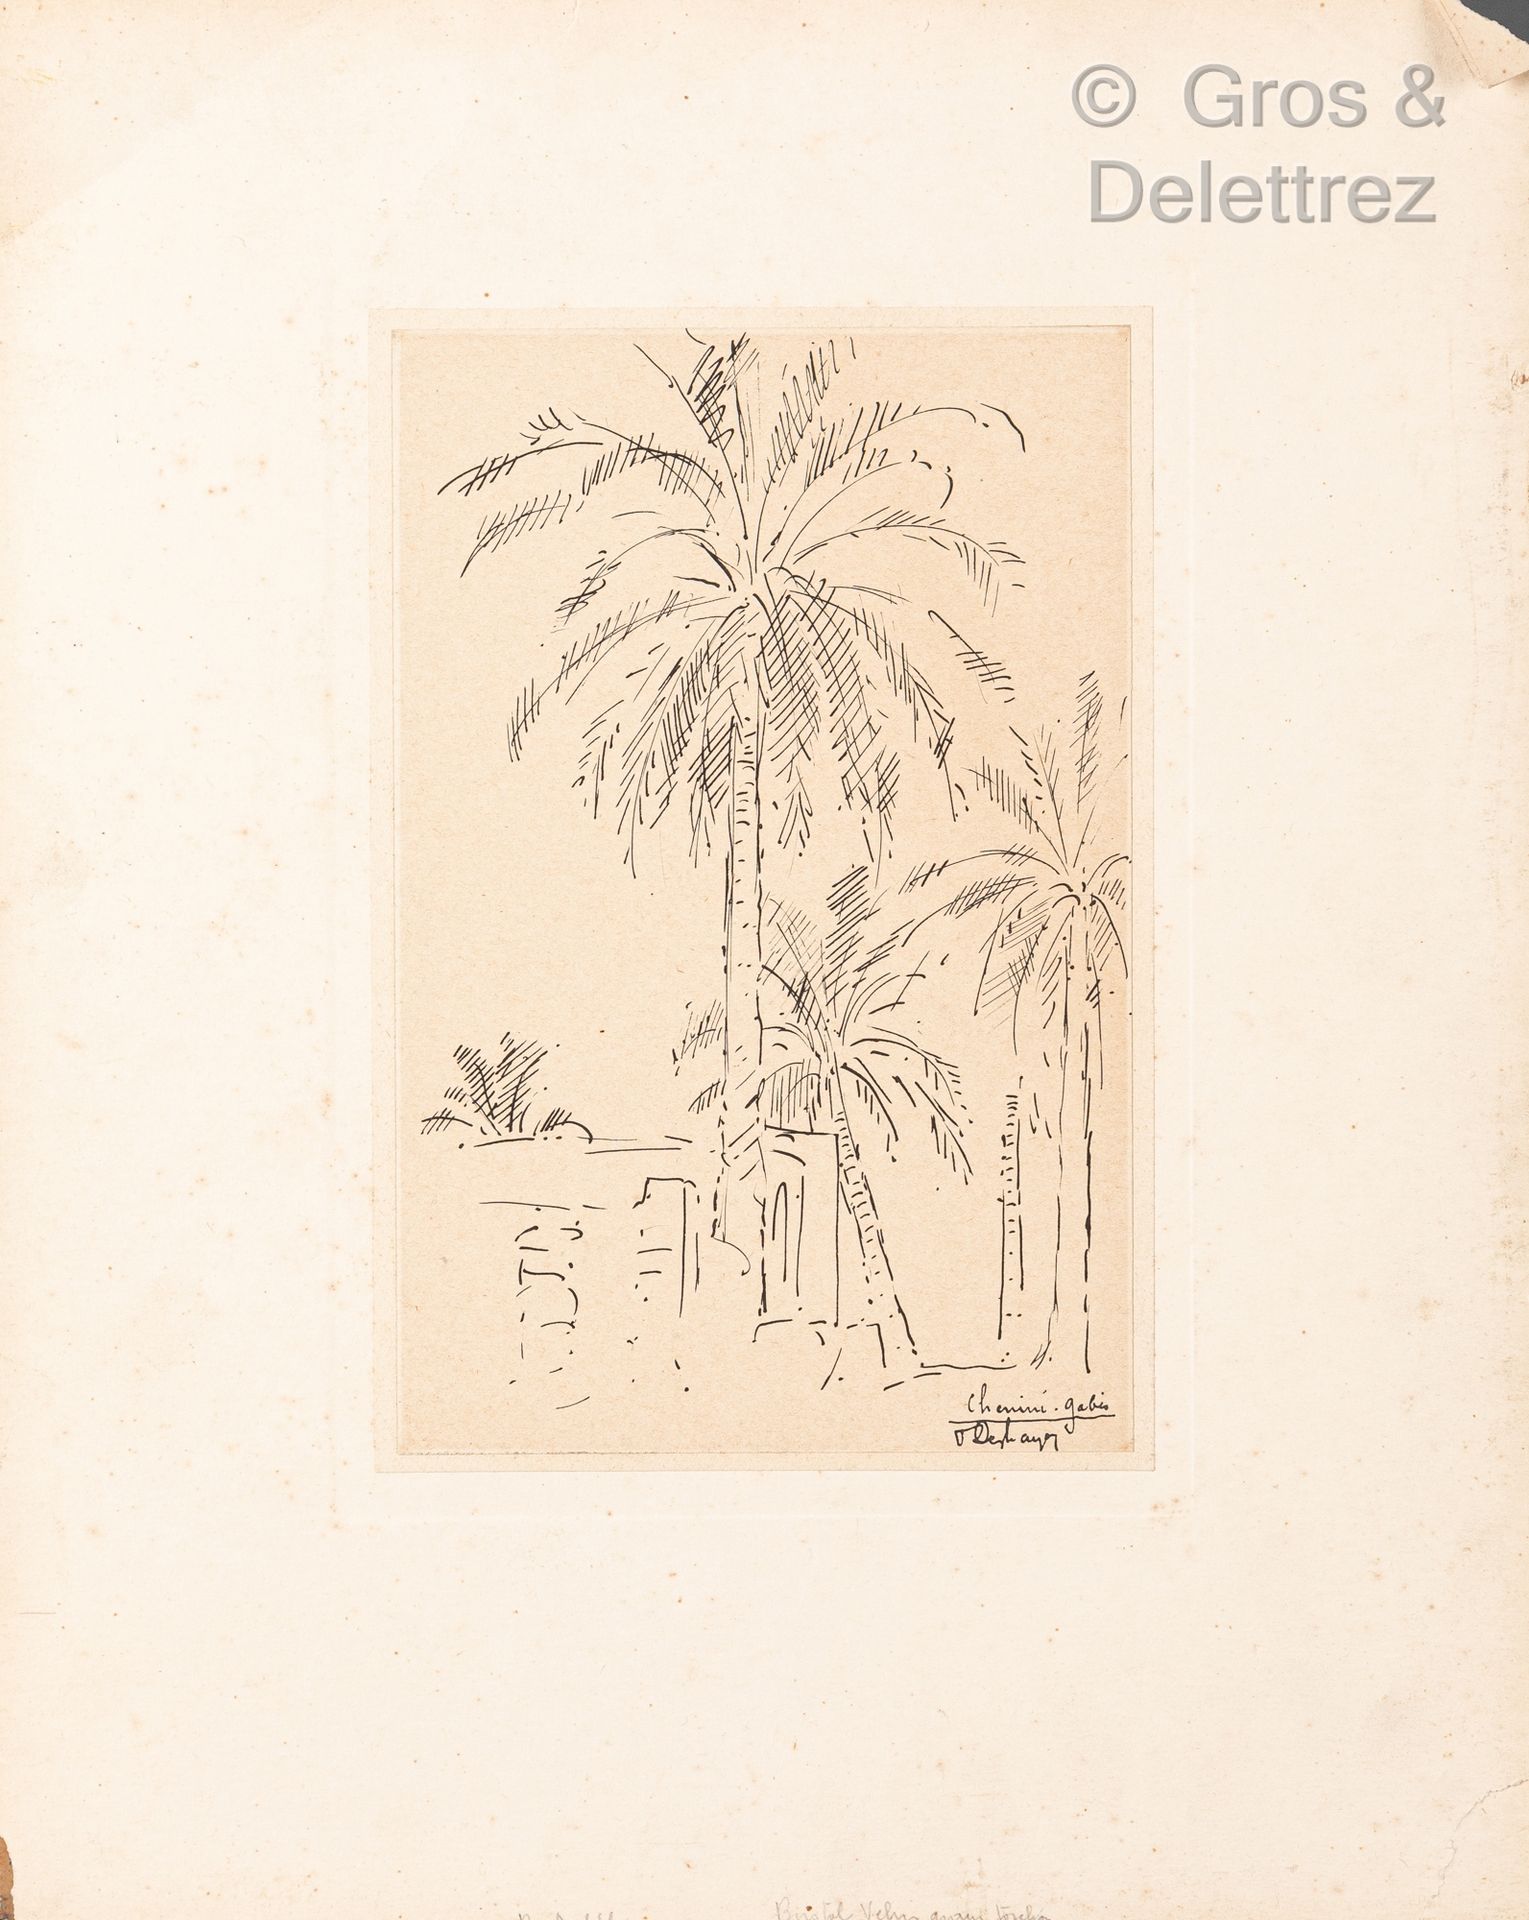 Null 欧仁-弗朗索瓦-戴斯海耶(1862-1939)

La Flotte en Ré; 鲁昂的景色和棕榈树环绕的道路

三张纸上水墨画，底部有签名和位置
&hellip;